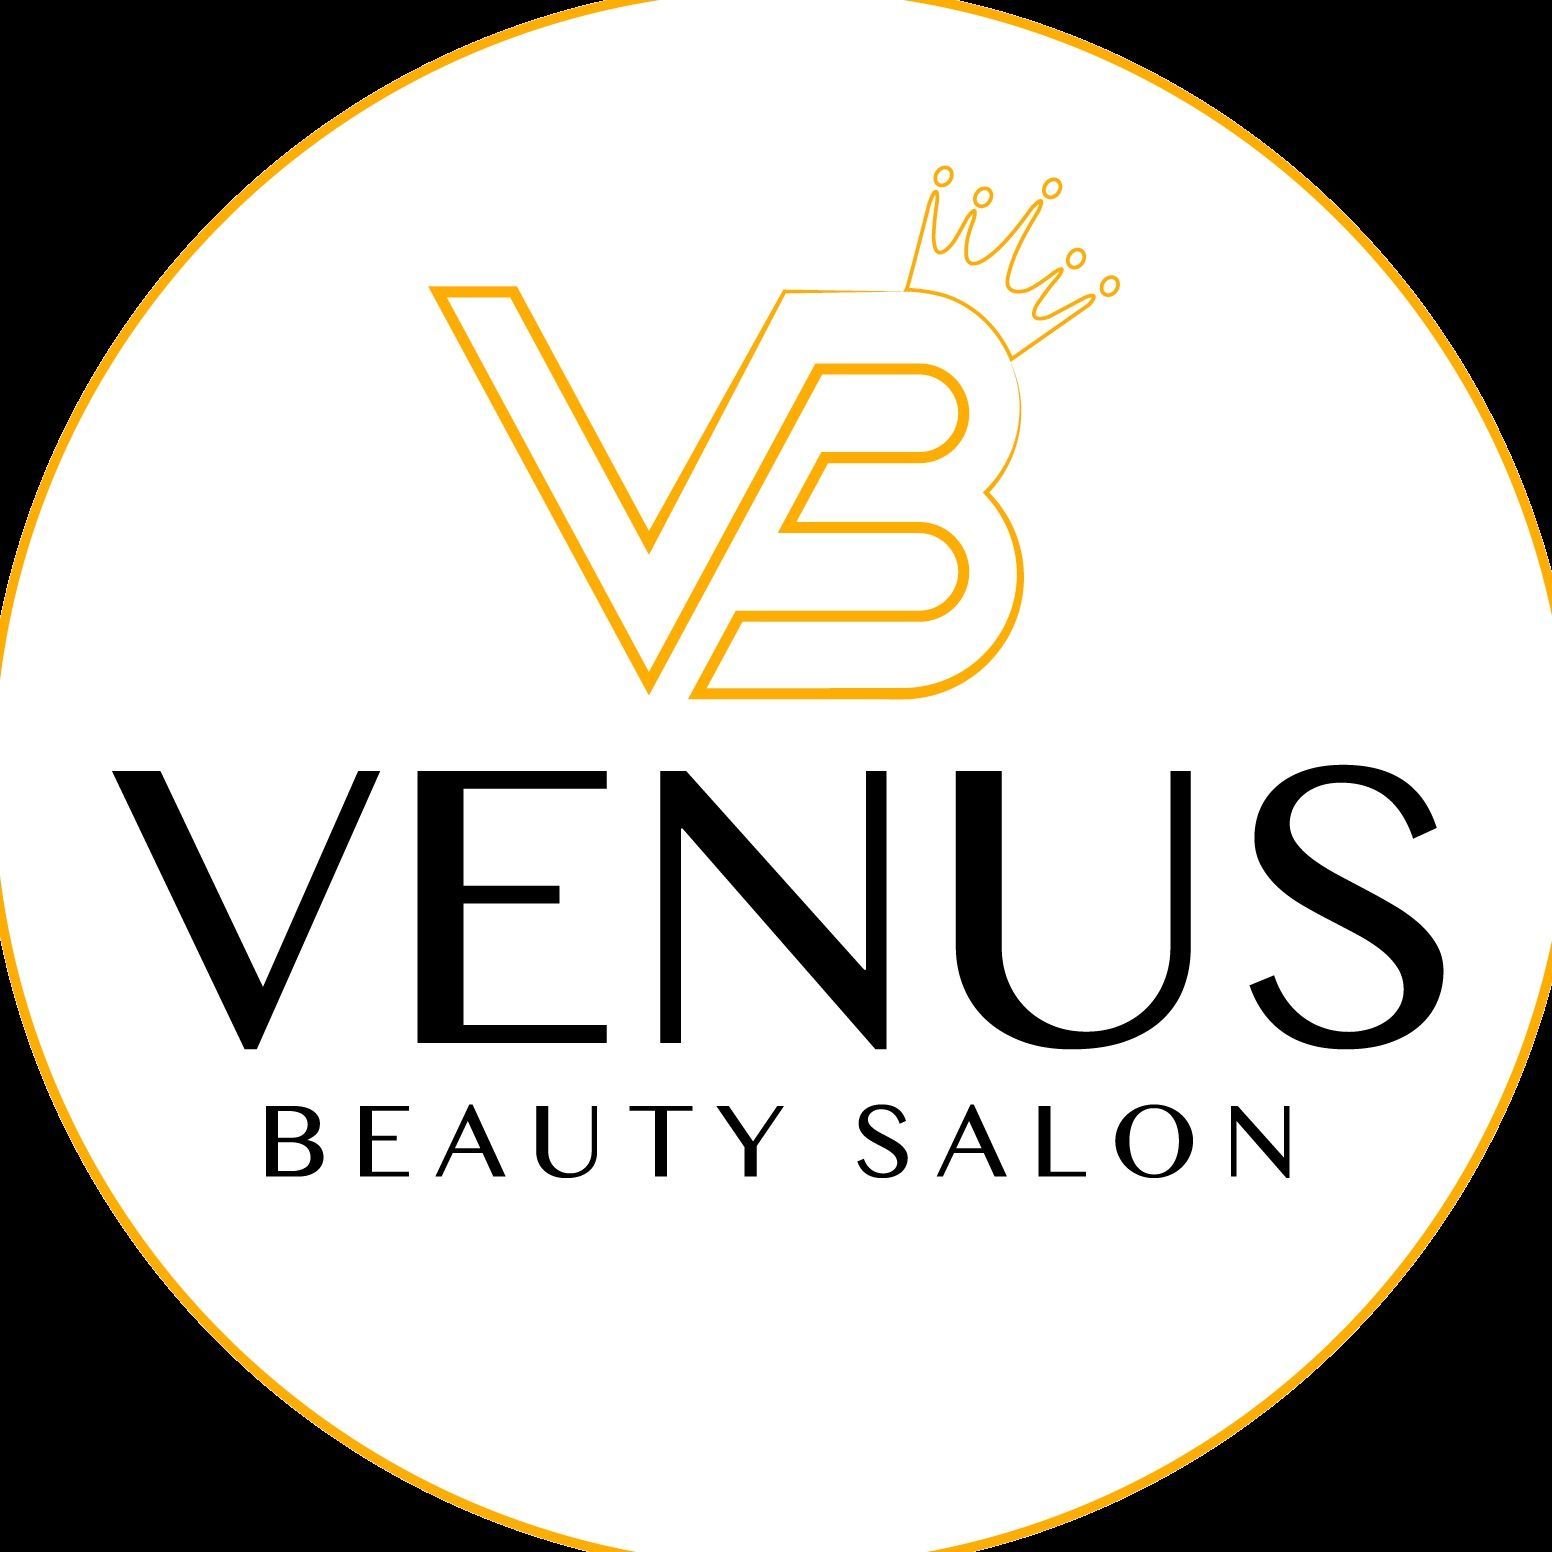 Venus Beauty Salon, Warmińska 20 lokal 37, Piętro 1, Pasaż Królewiecki, 54-110, Wrocław, Fabryczna